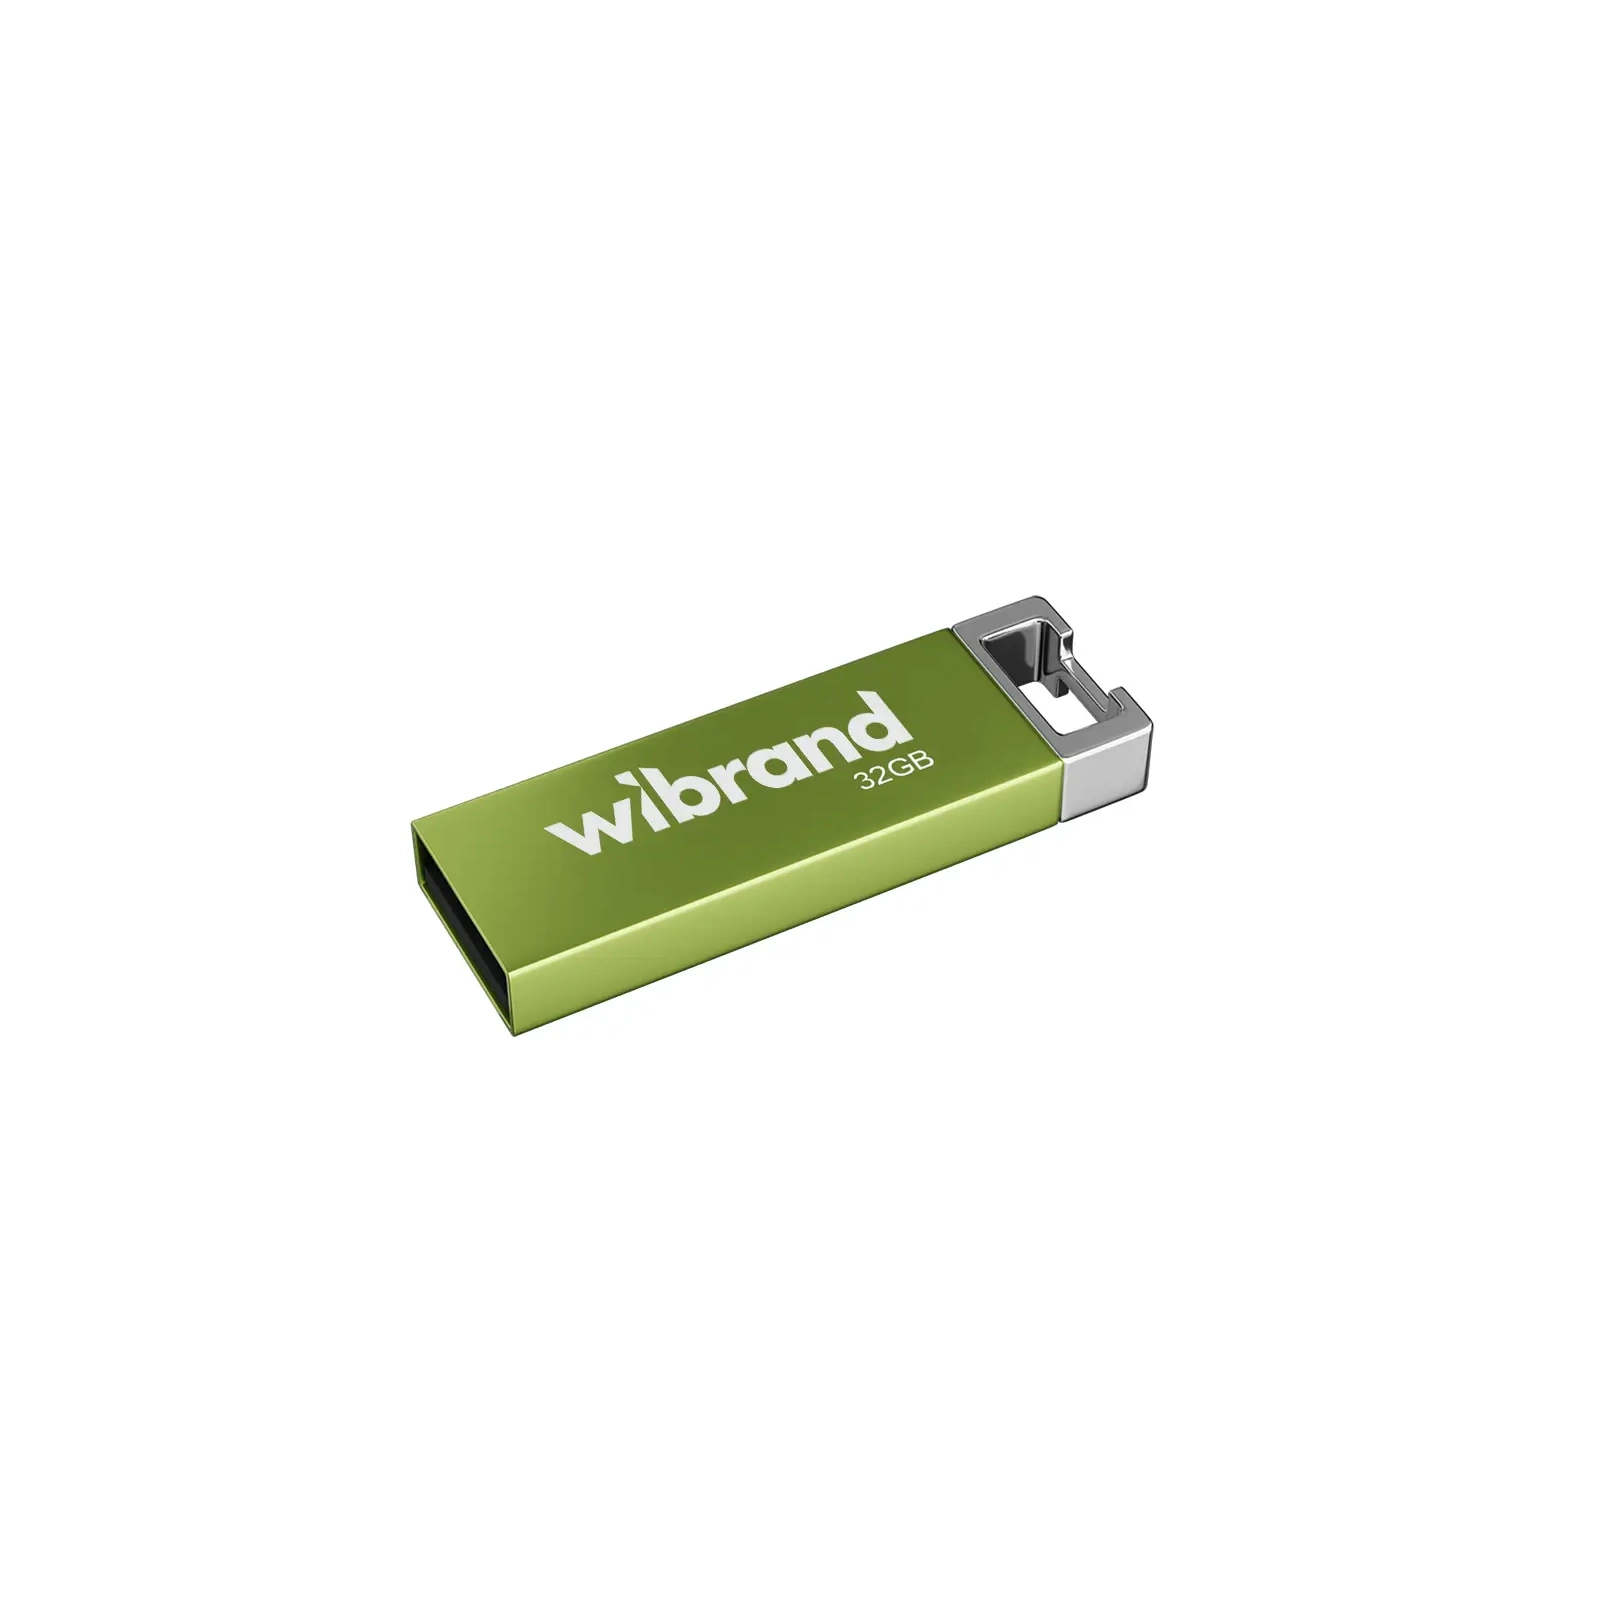 USB флеш накопитель Wibrand 32GB Chameleon Blue USB 2.0 (WI2.0/CH32U6U)